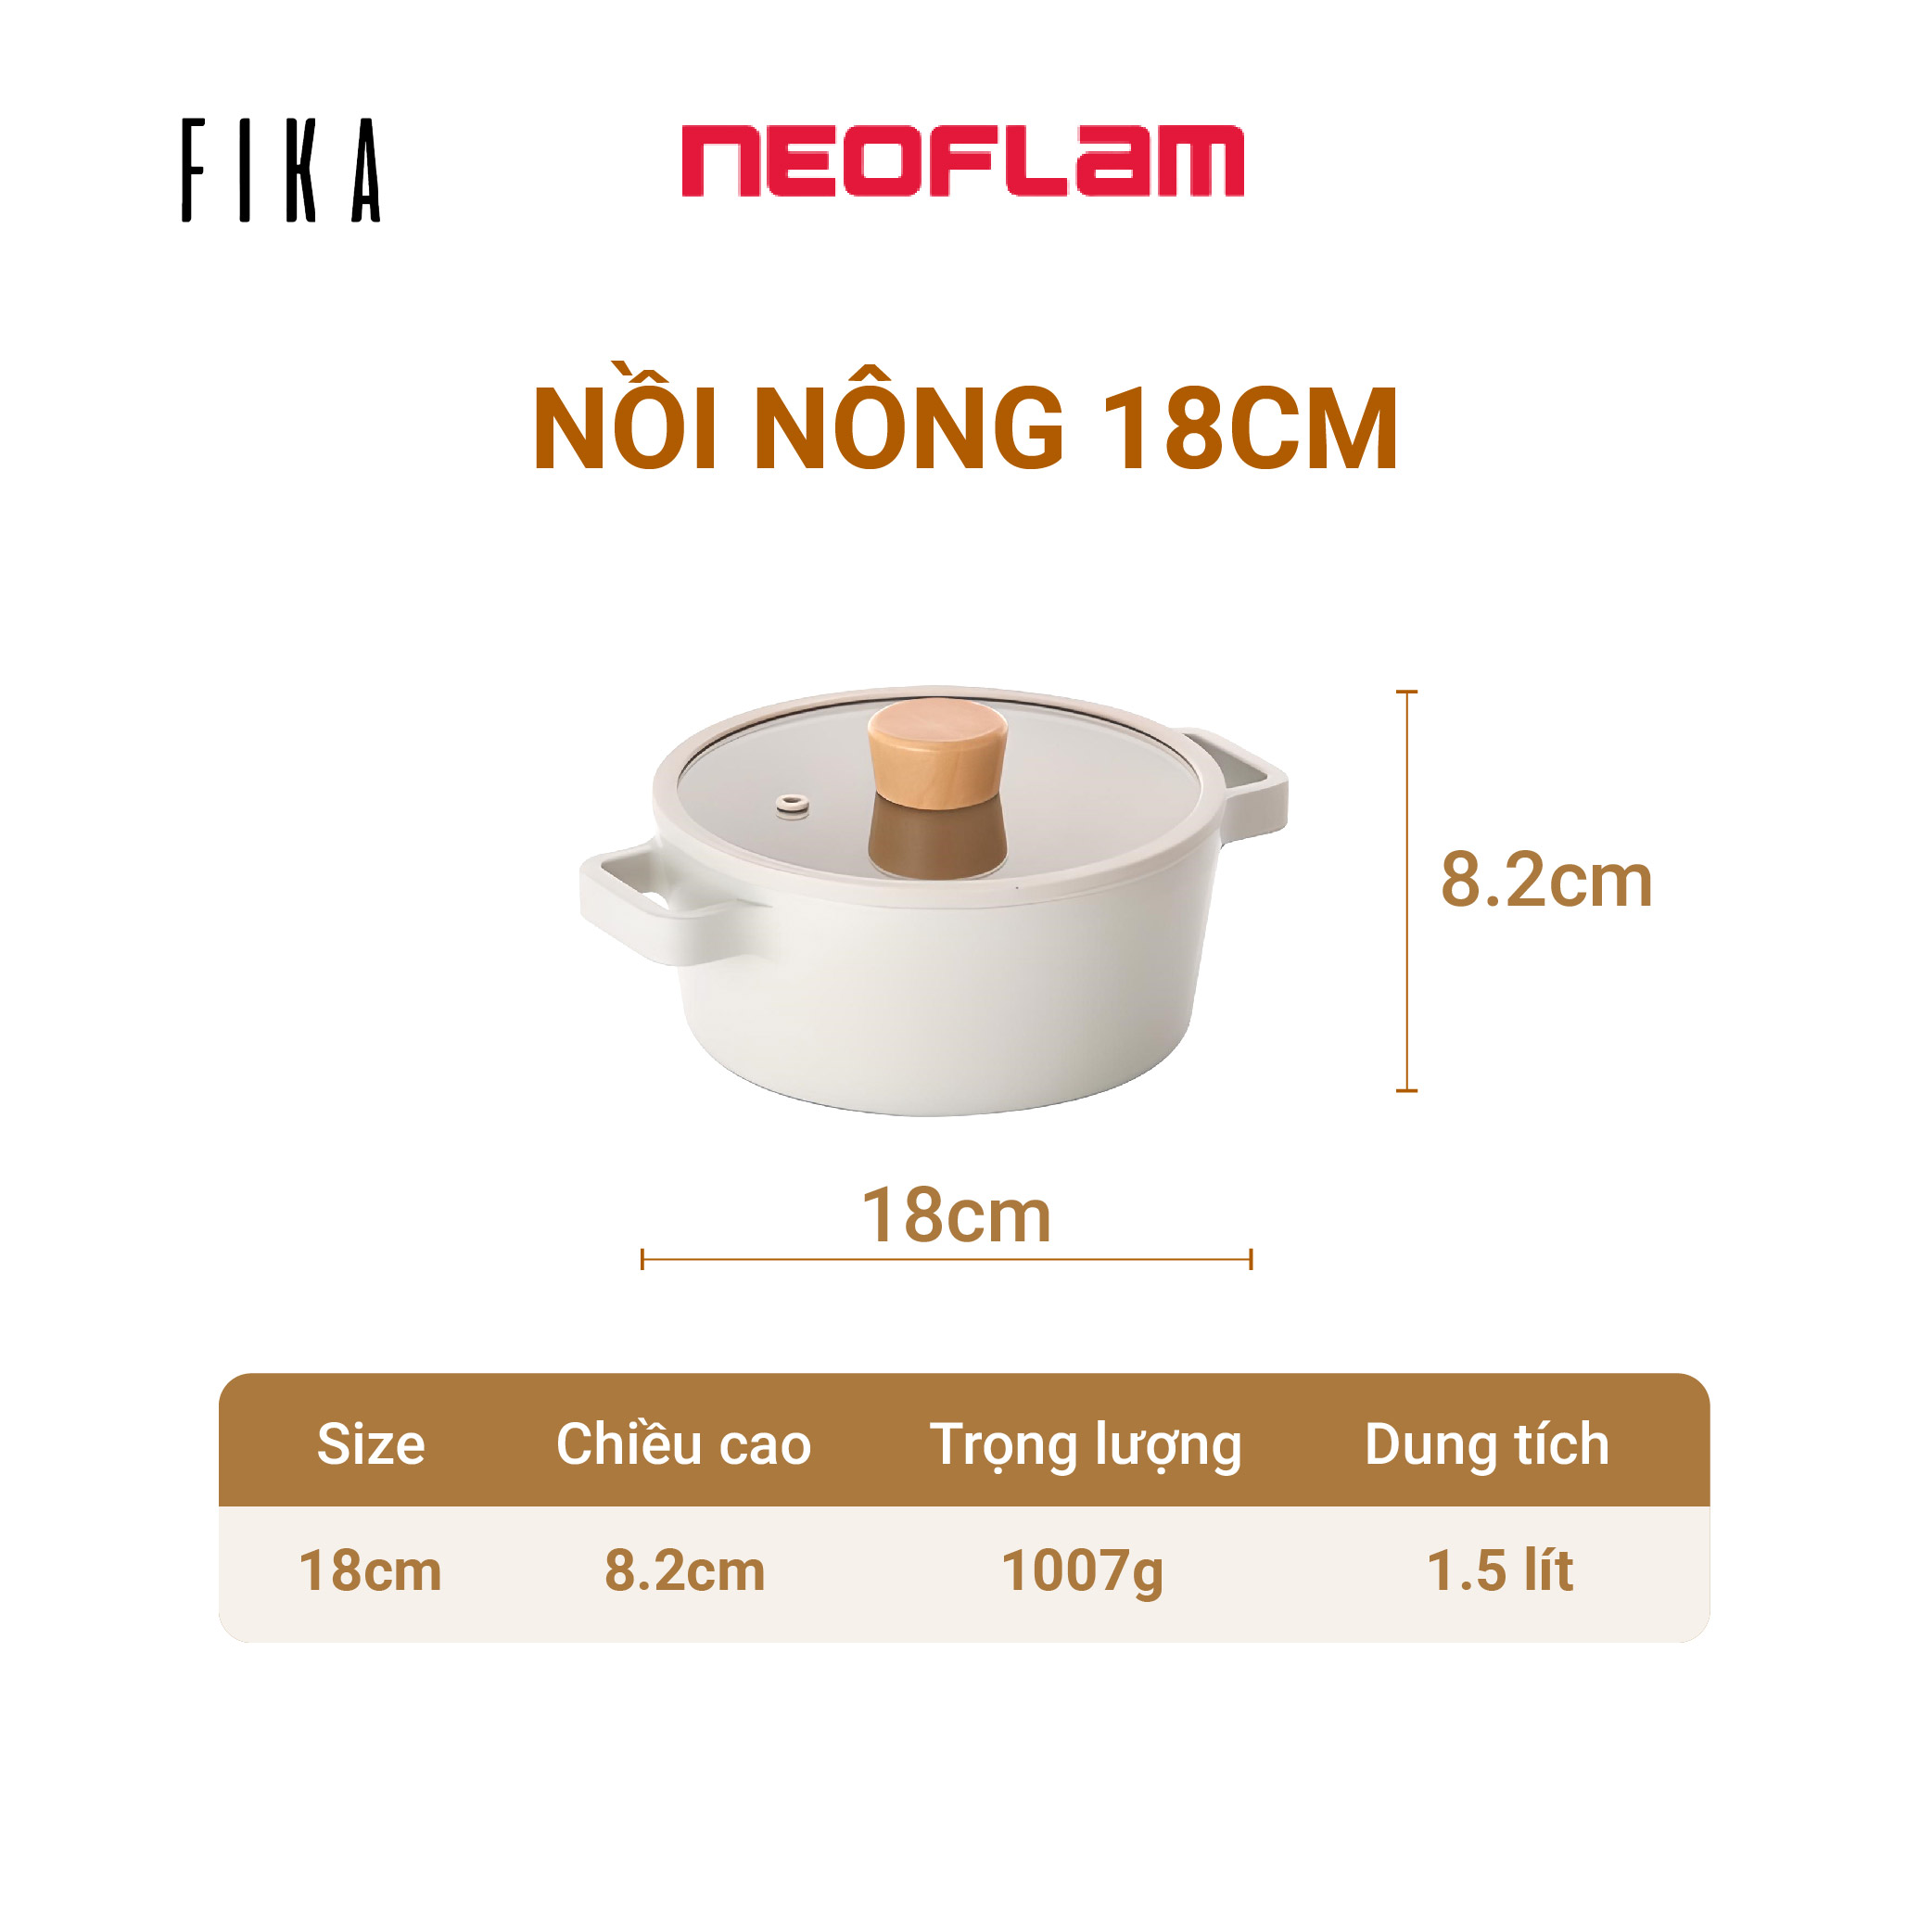 Nồi cỡ nhỏ Neoflam Fika 18cm, dung tích 1.5L, trọng lượng 1kg. Made in Korea, Hàng có sẵn giao ngay